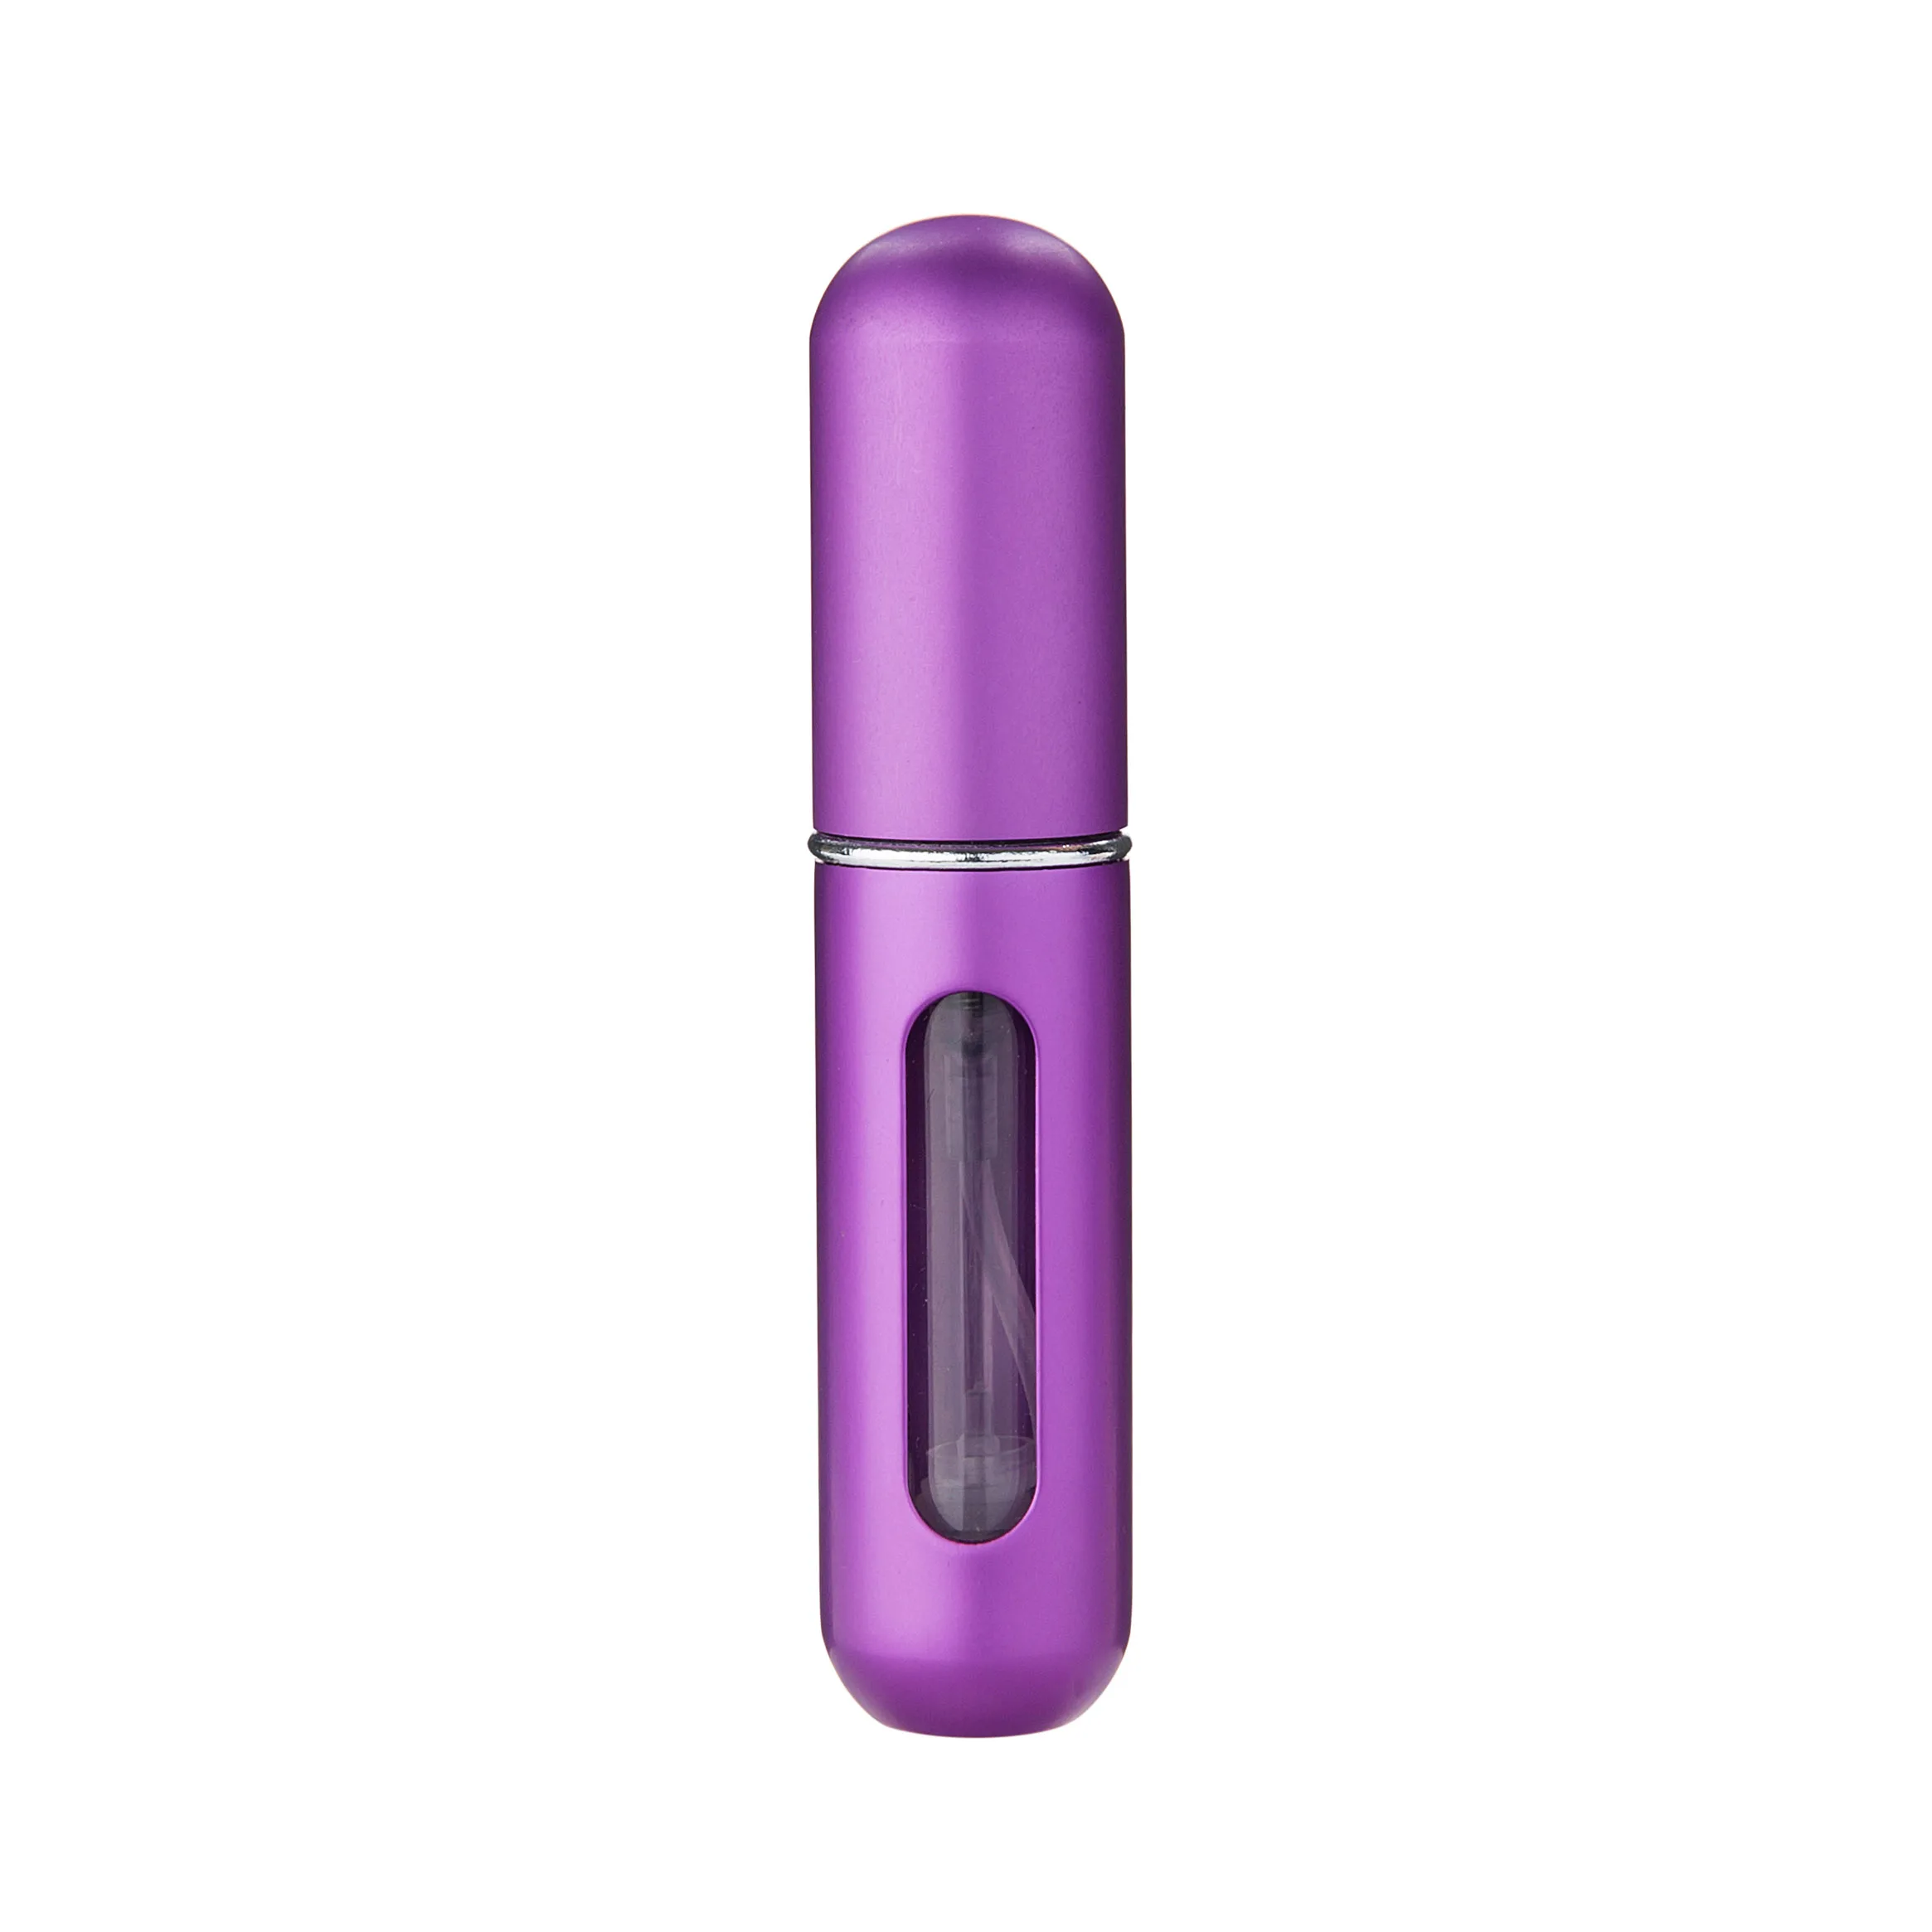 MUB-5 мл мини алюминиевая многоразовая прозрачная бутылочка для парфюма парфюмированный спрей в бутылке пустой косметический контейнер с упаковочной коробкой - Цвет: Purple